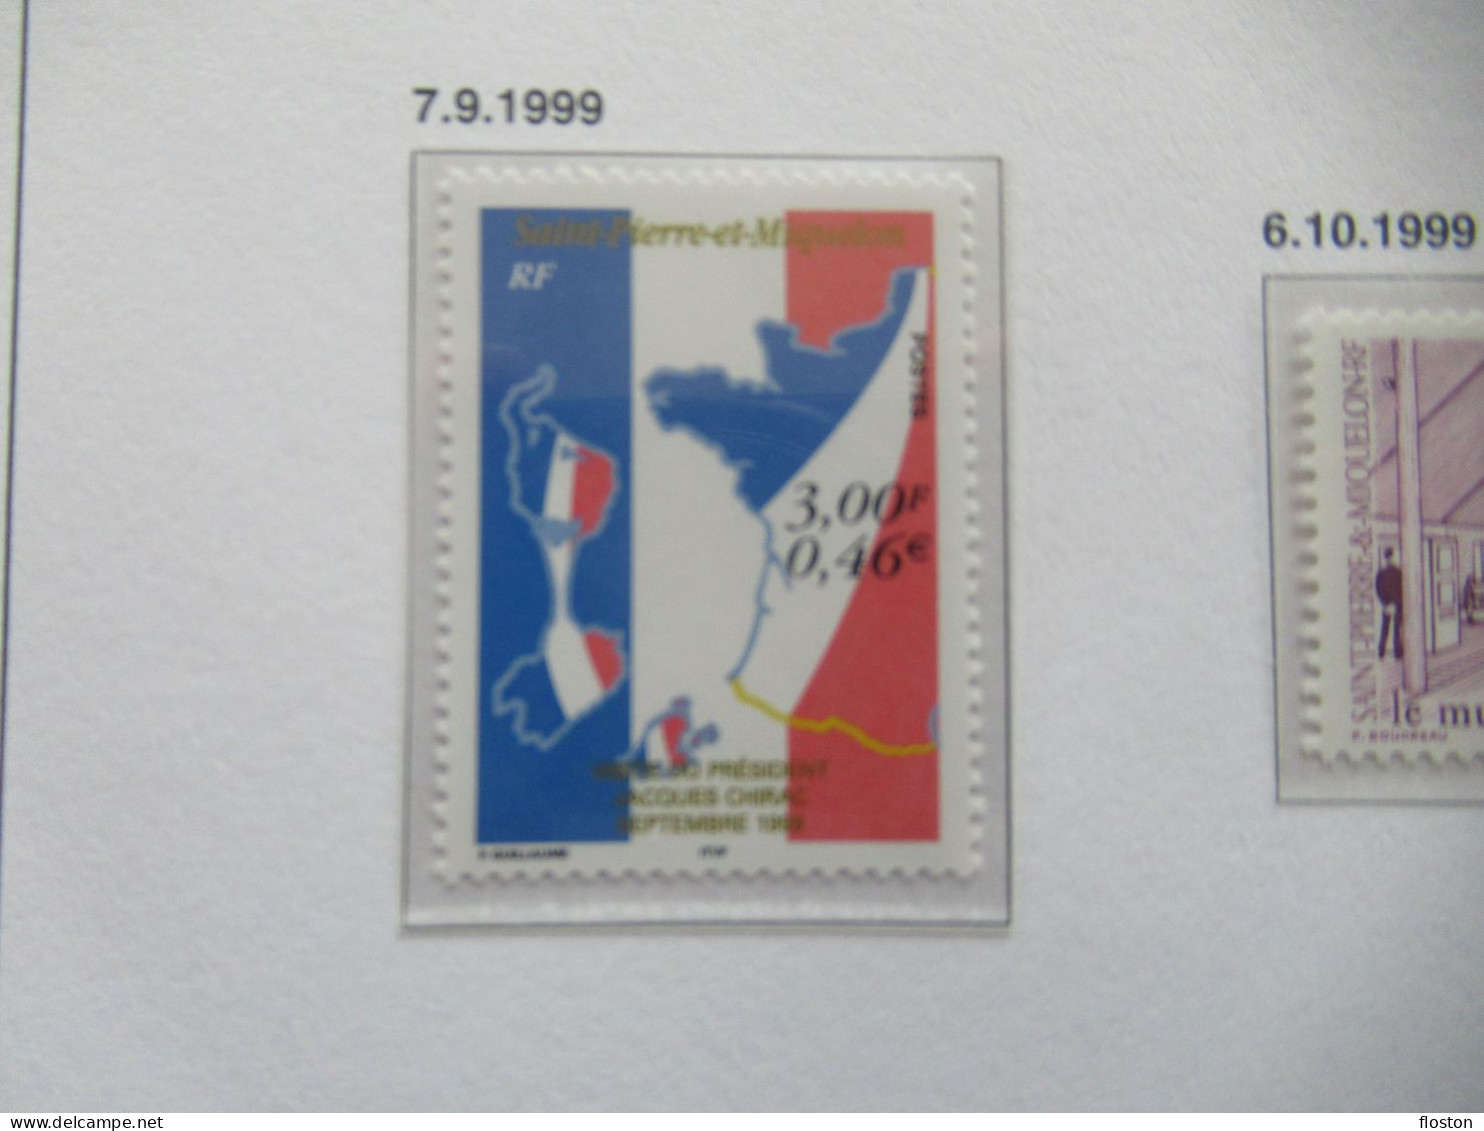 n°609 à 705 - Année 1995 à 1999 - LUXE** + Poste Aérienne n°64-85 (1987 à 2005) + Taxe 1986 sur feuille DAVO